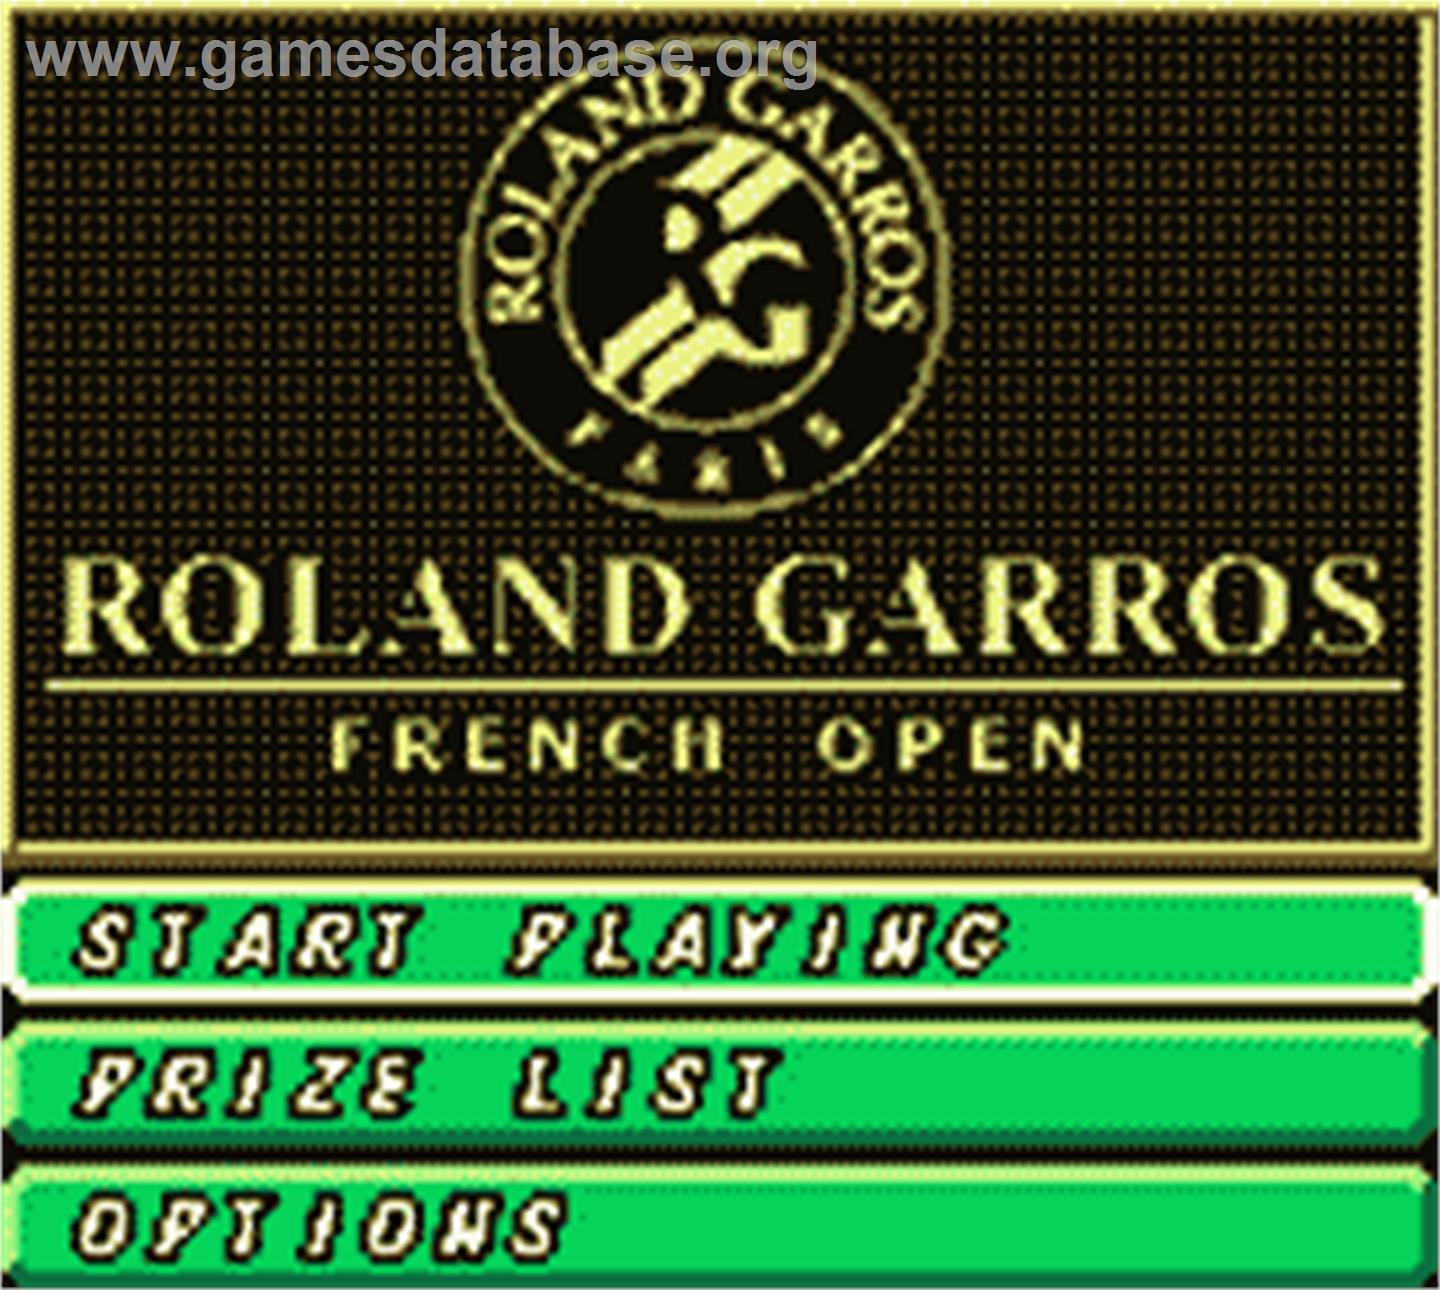 Roland Garros French Open 2000 - Nintendo Game Boy Color - Artwork - Title Screen